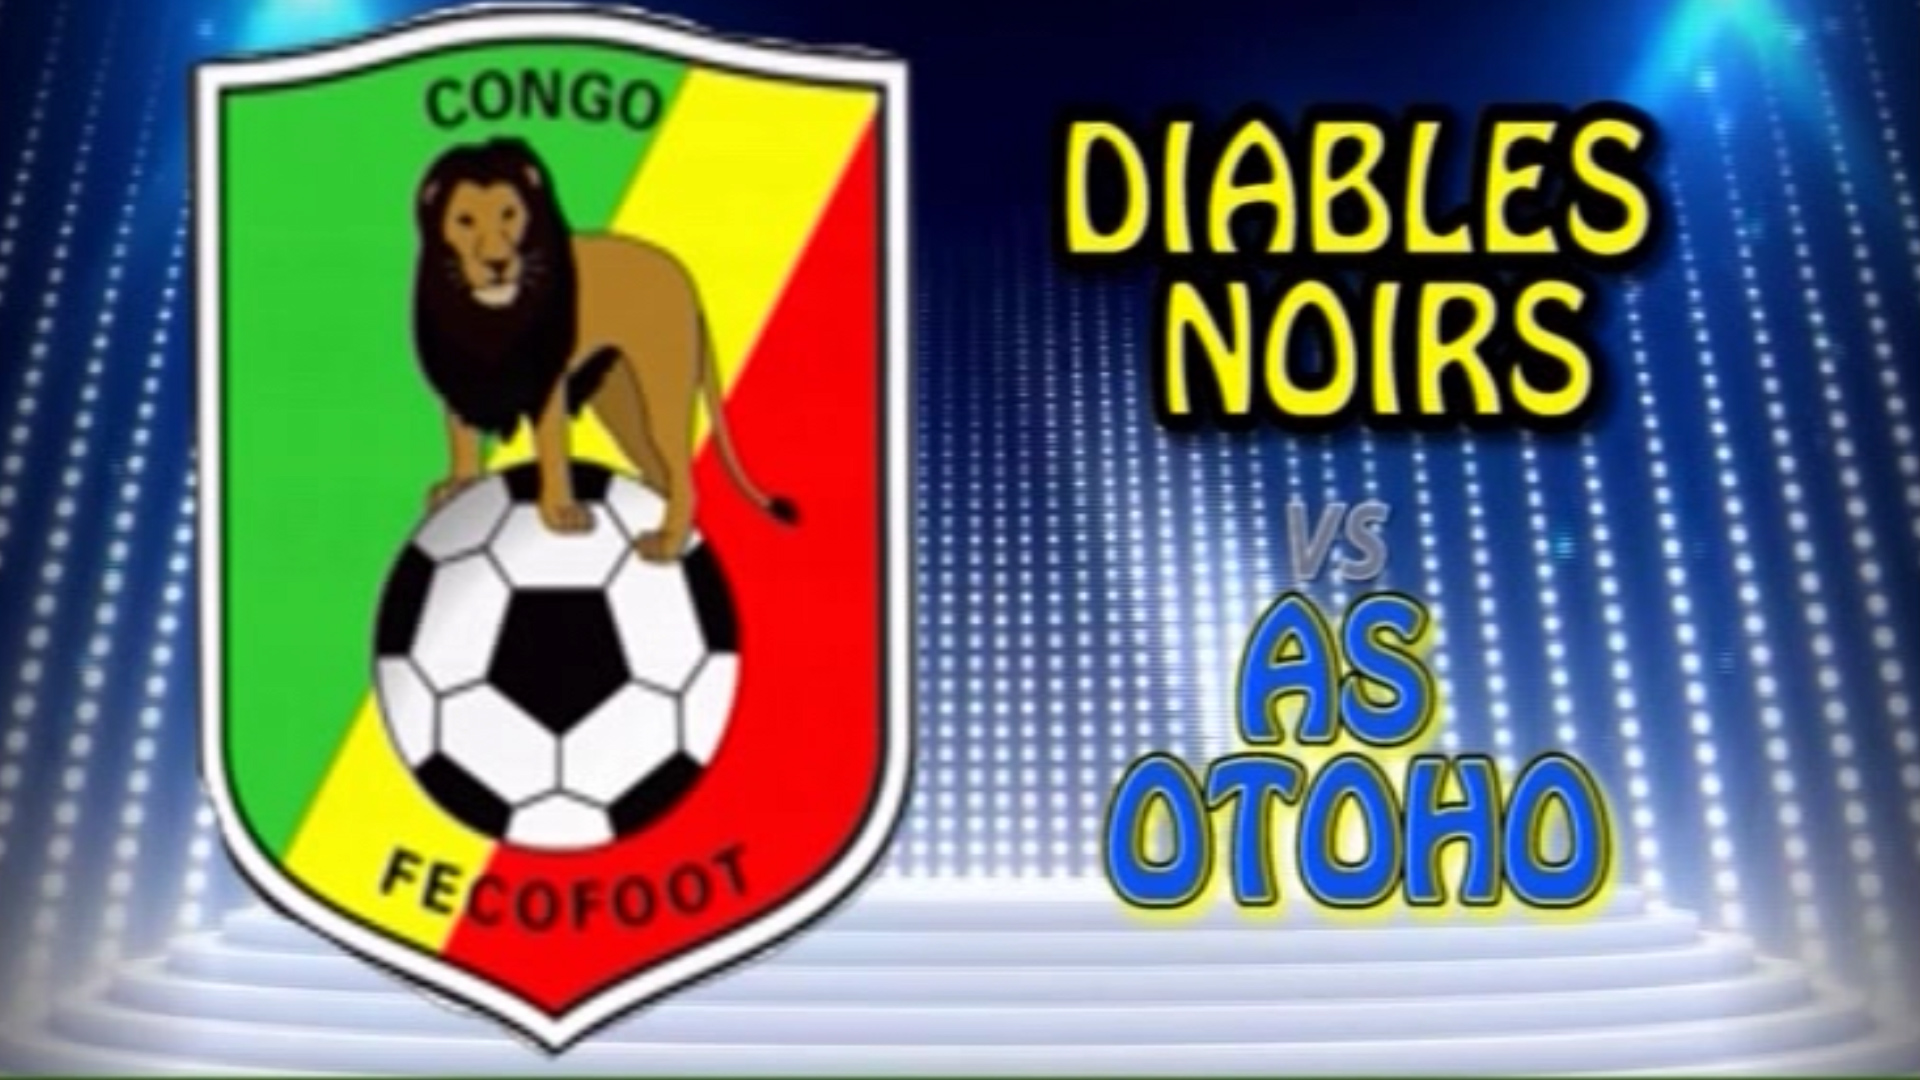 AS OTOHO VS DIABLES NOIRS UNE AFFICHE INTERDITE POUR LA FINALE DE LA COUPE DU CONGO